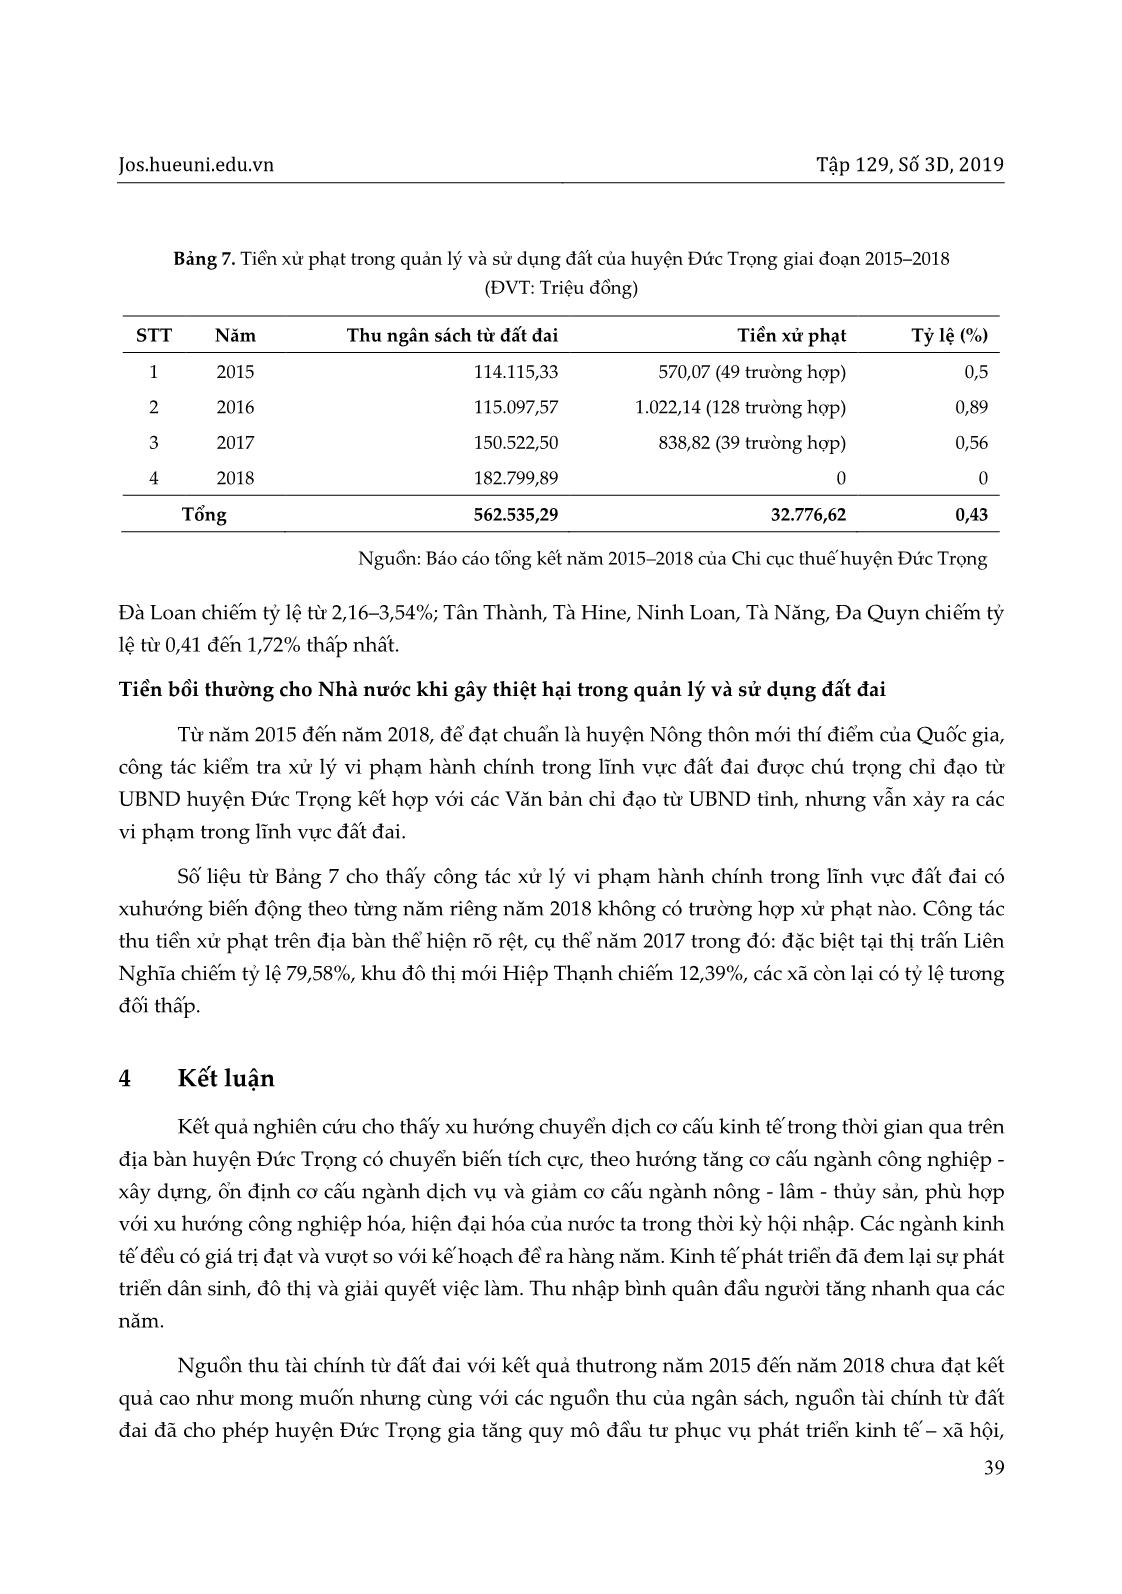 Tình hình khai thác nguồn thu tài chính từ đất đai tại huyện Đức Trọng, tỉnh Lâm Đồng trang 9